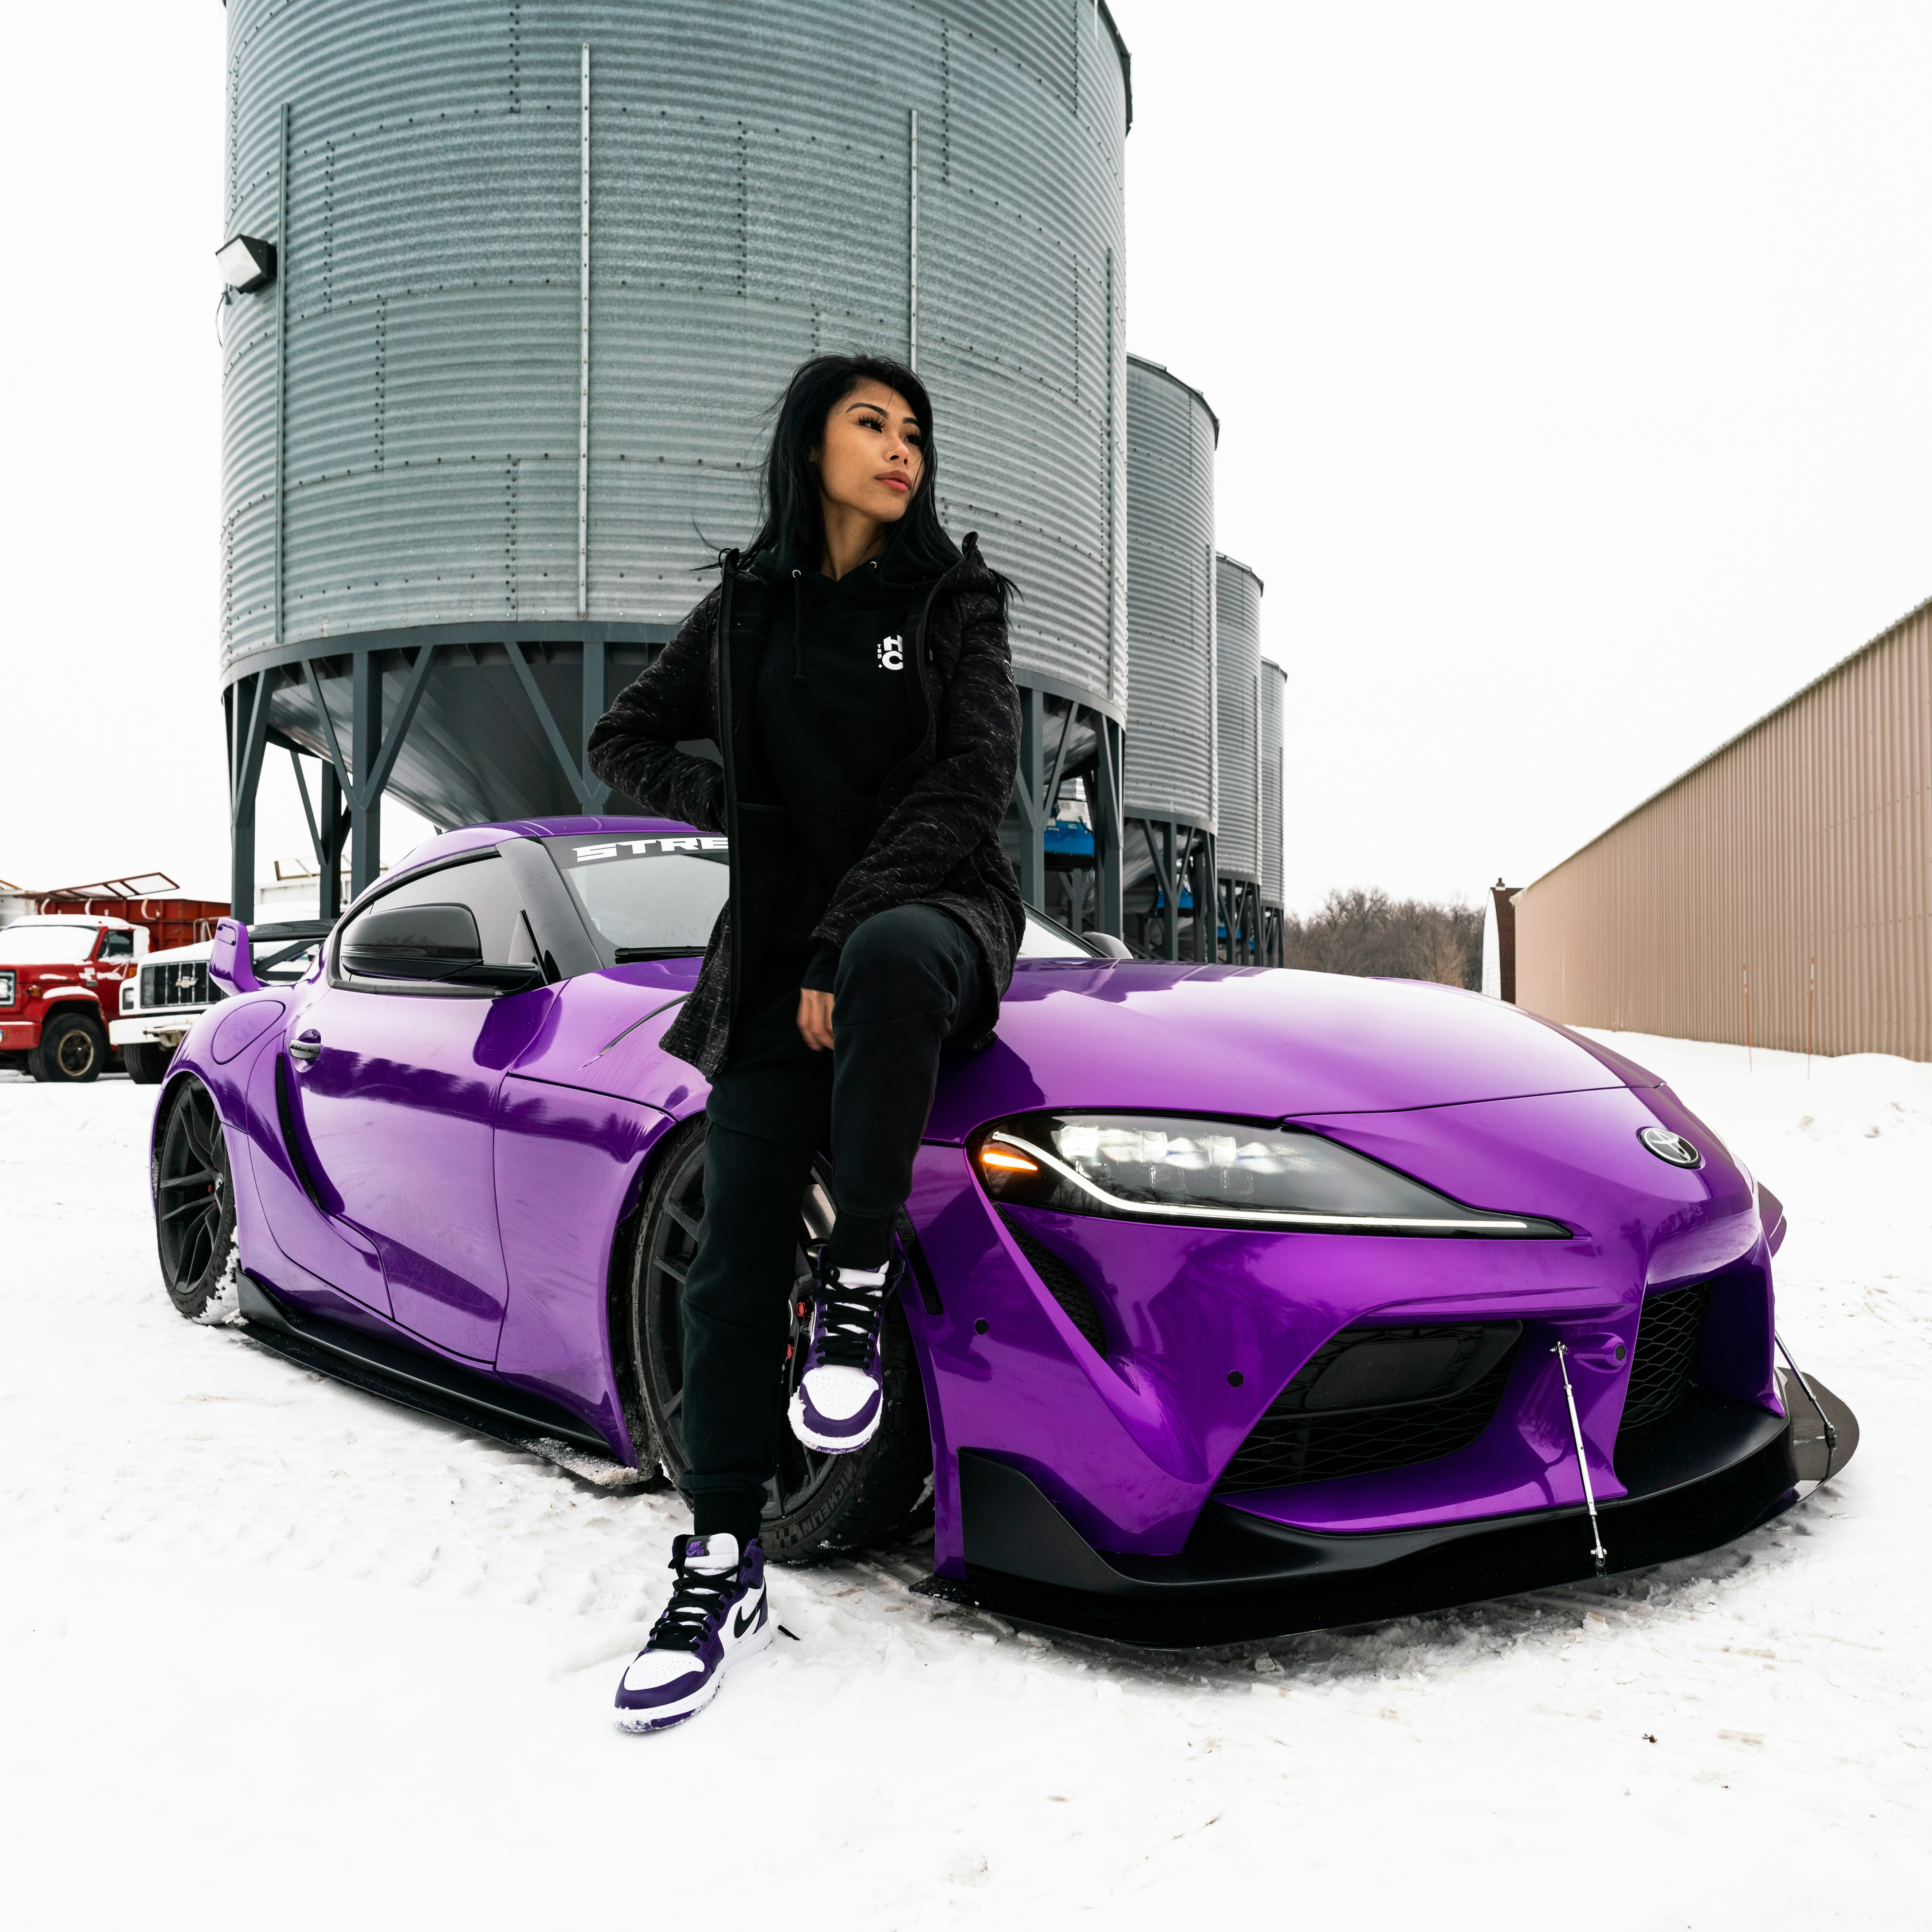 woman in black jacket and black pants standing beside purple car